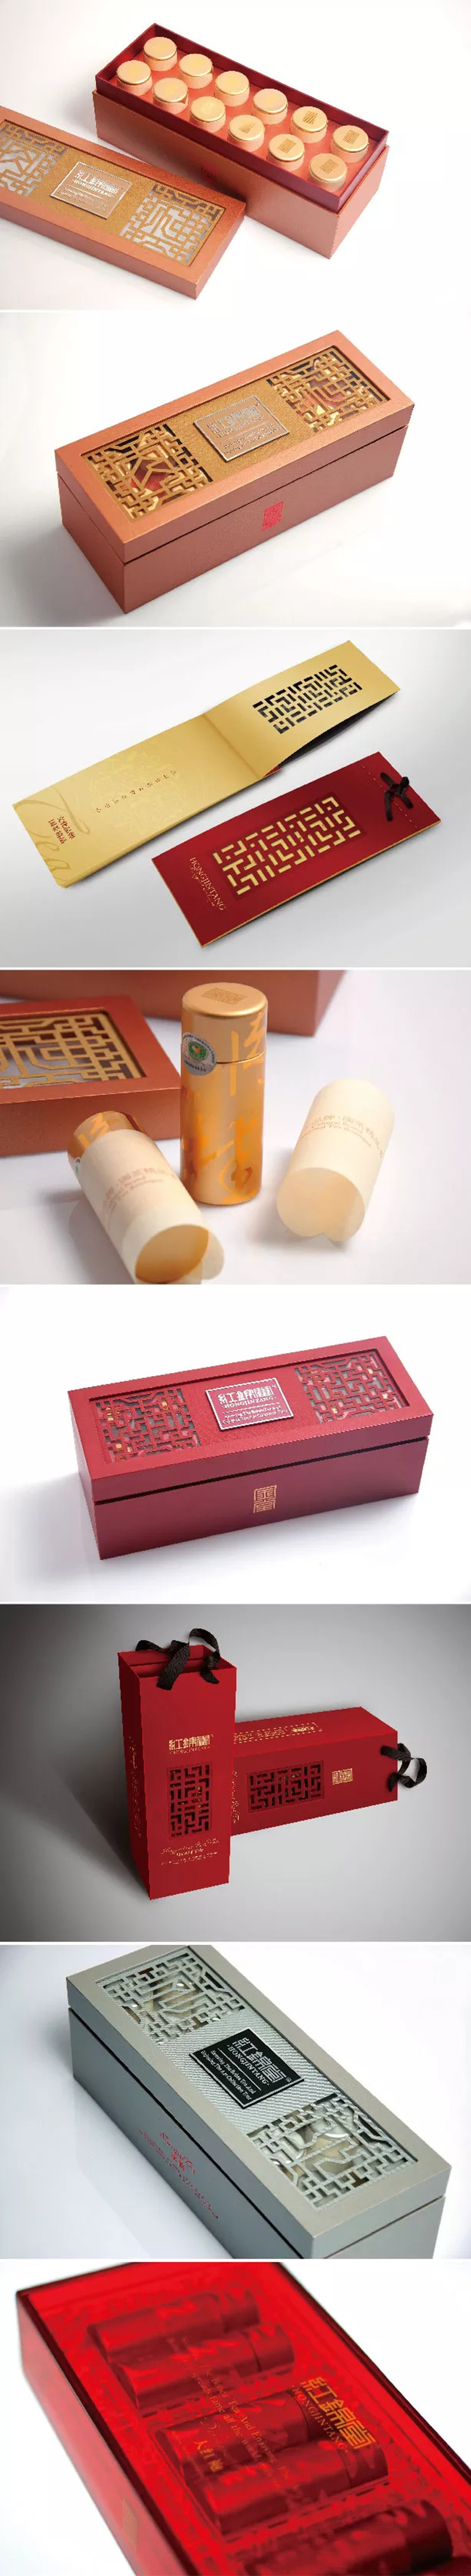 高档保健品礼盒木盒设计